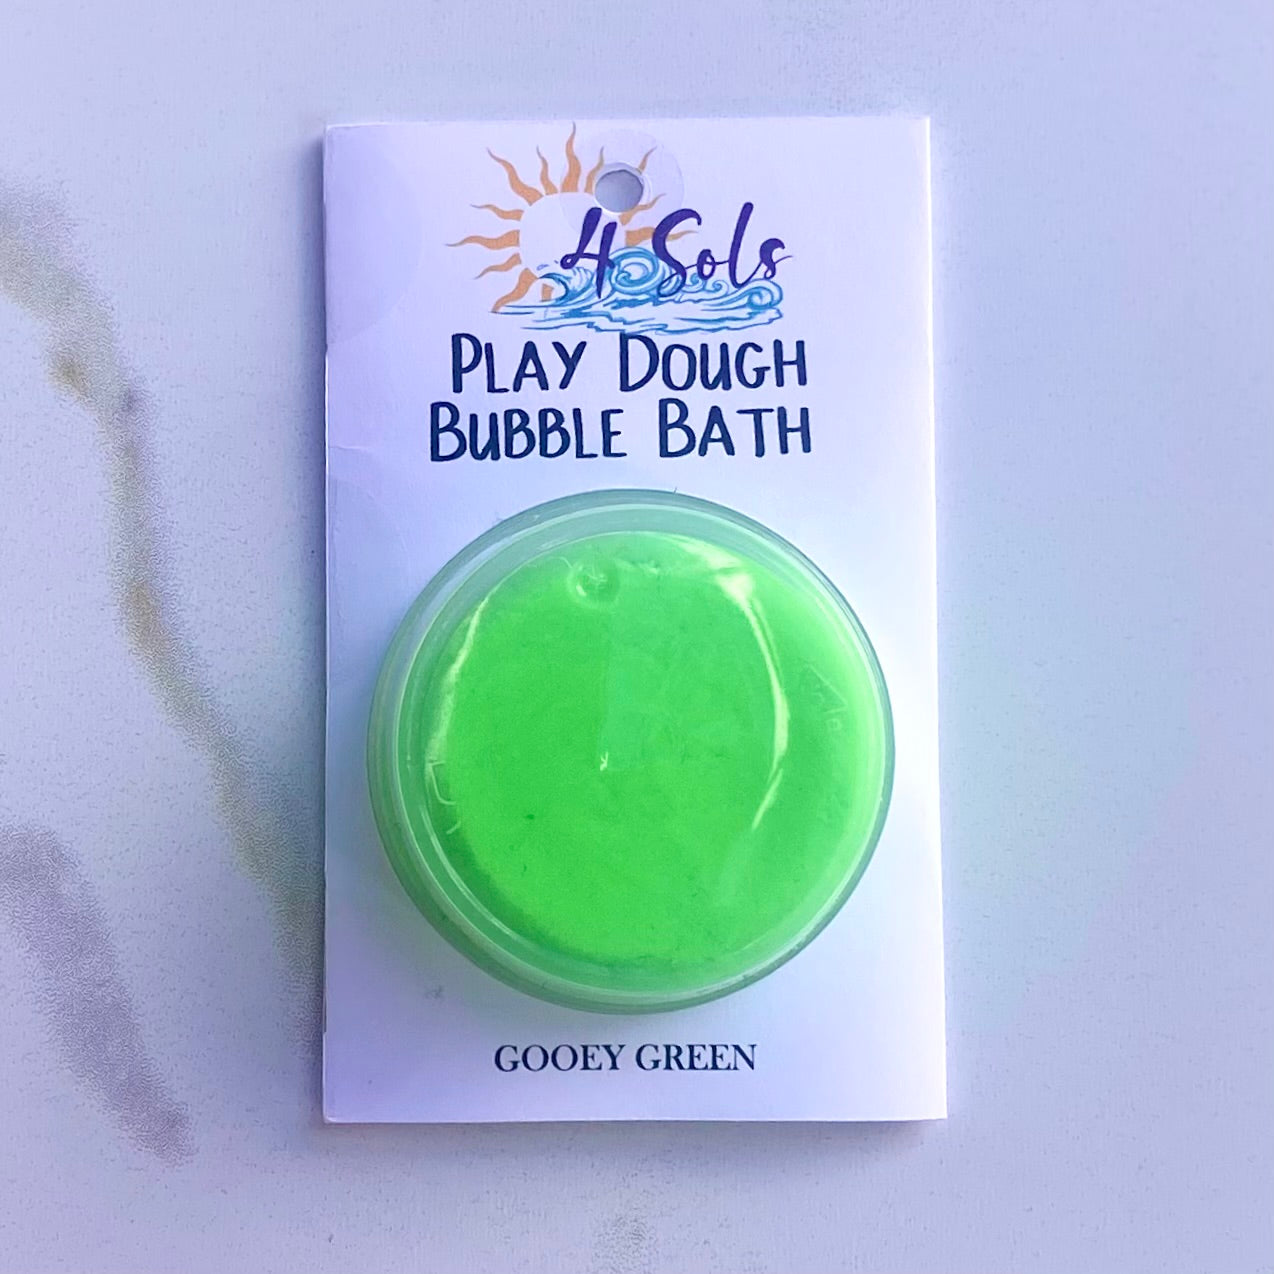 Play Dough Bubble Bath - Green